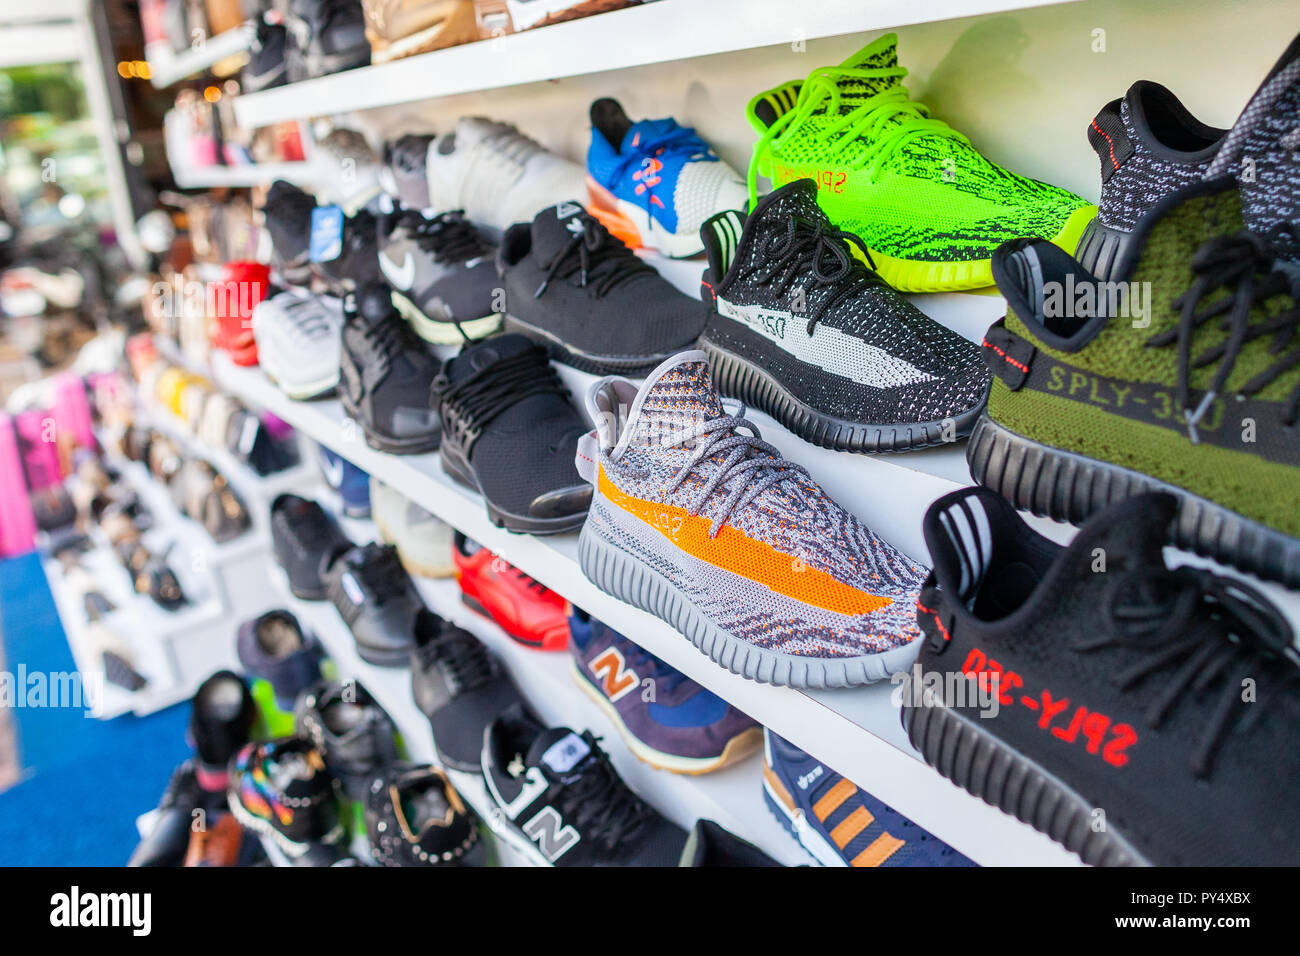 ALANYA/TÜRKEI - September 30, 2018: Schuhe von verschiedenen Marken steht  in einem Geschäft in Alanya Stockfotografie - Alamy